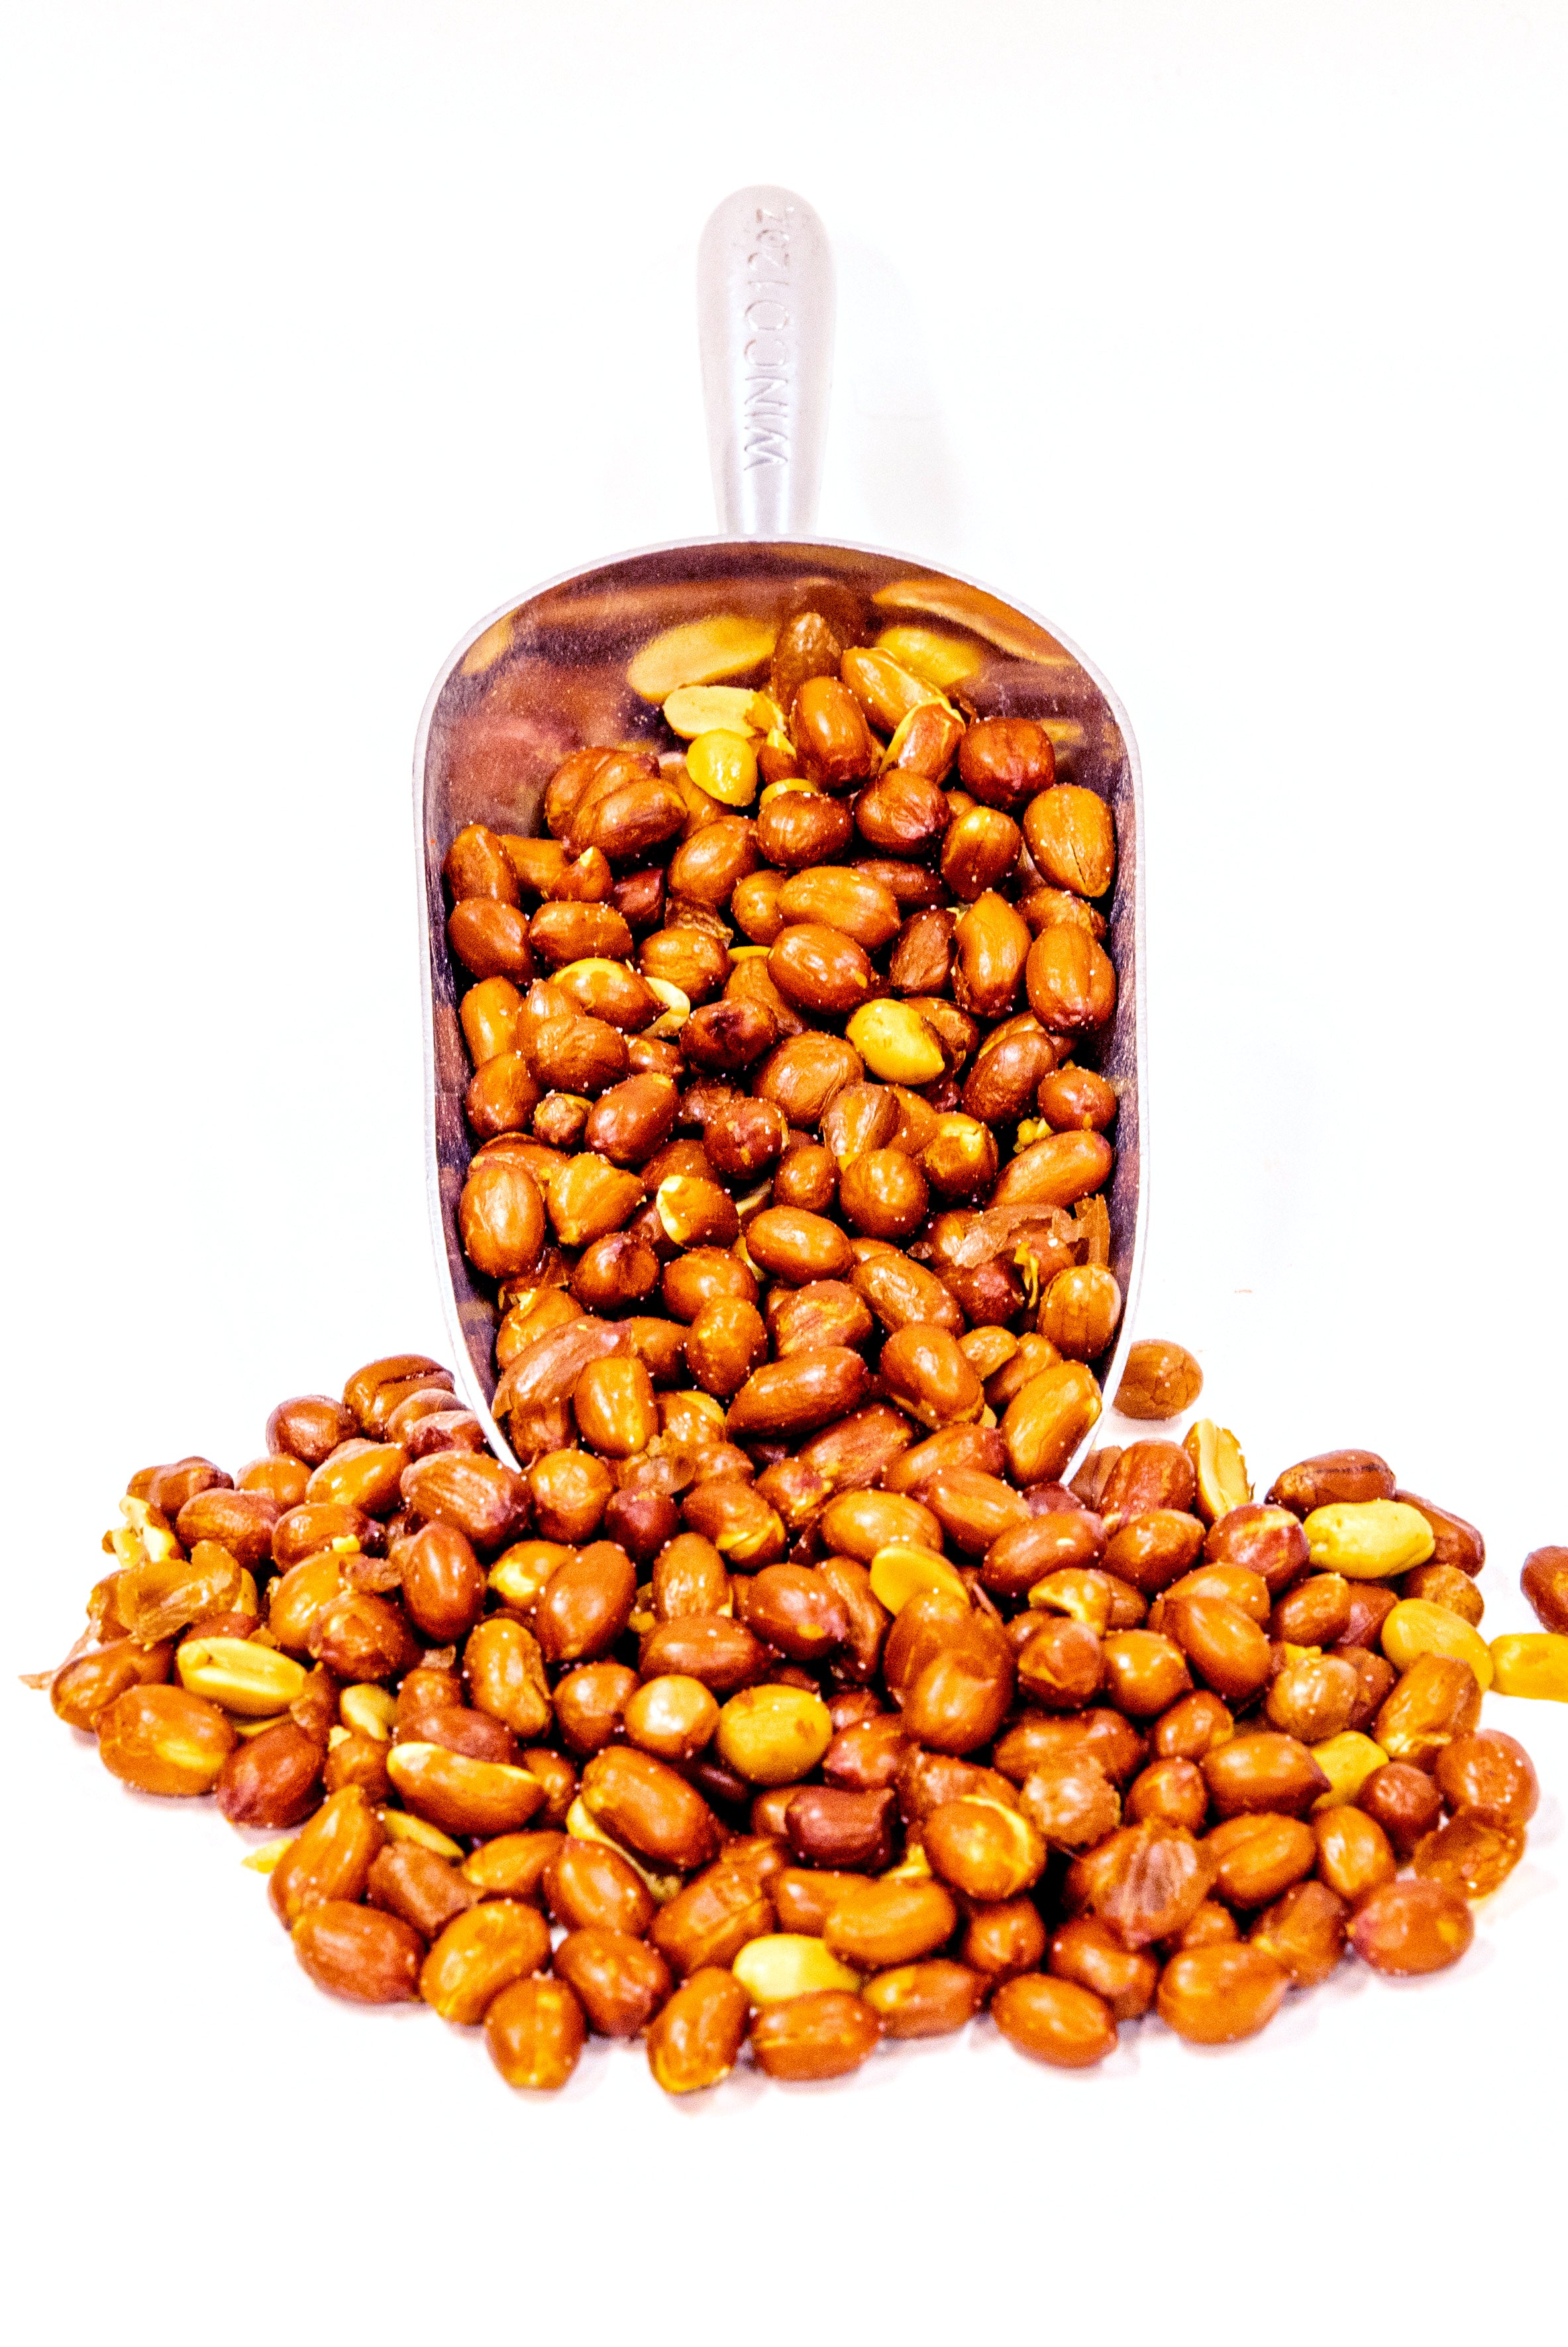 Roasted & Salted Spanish Peanuts